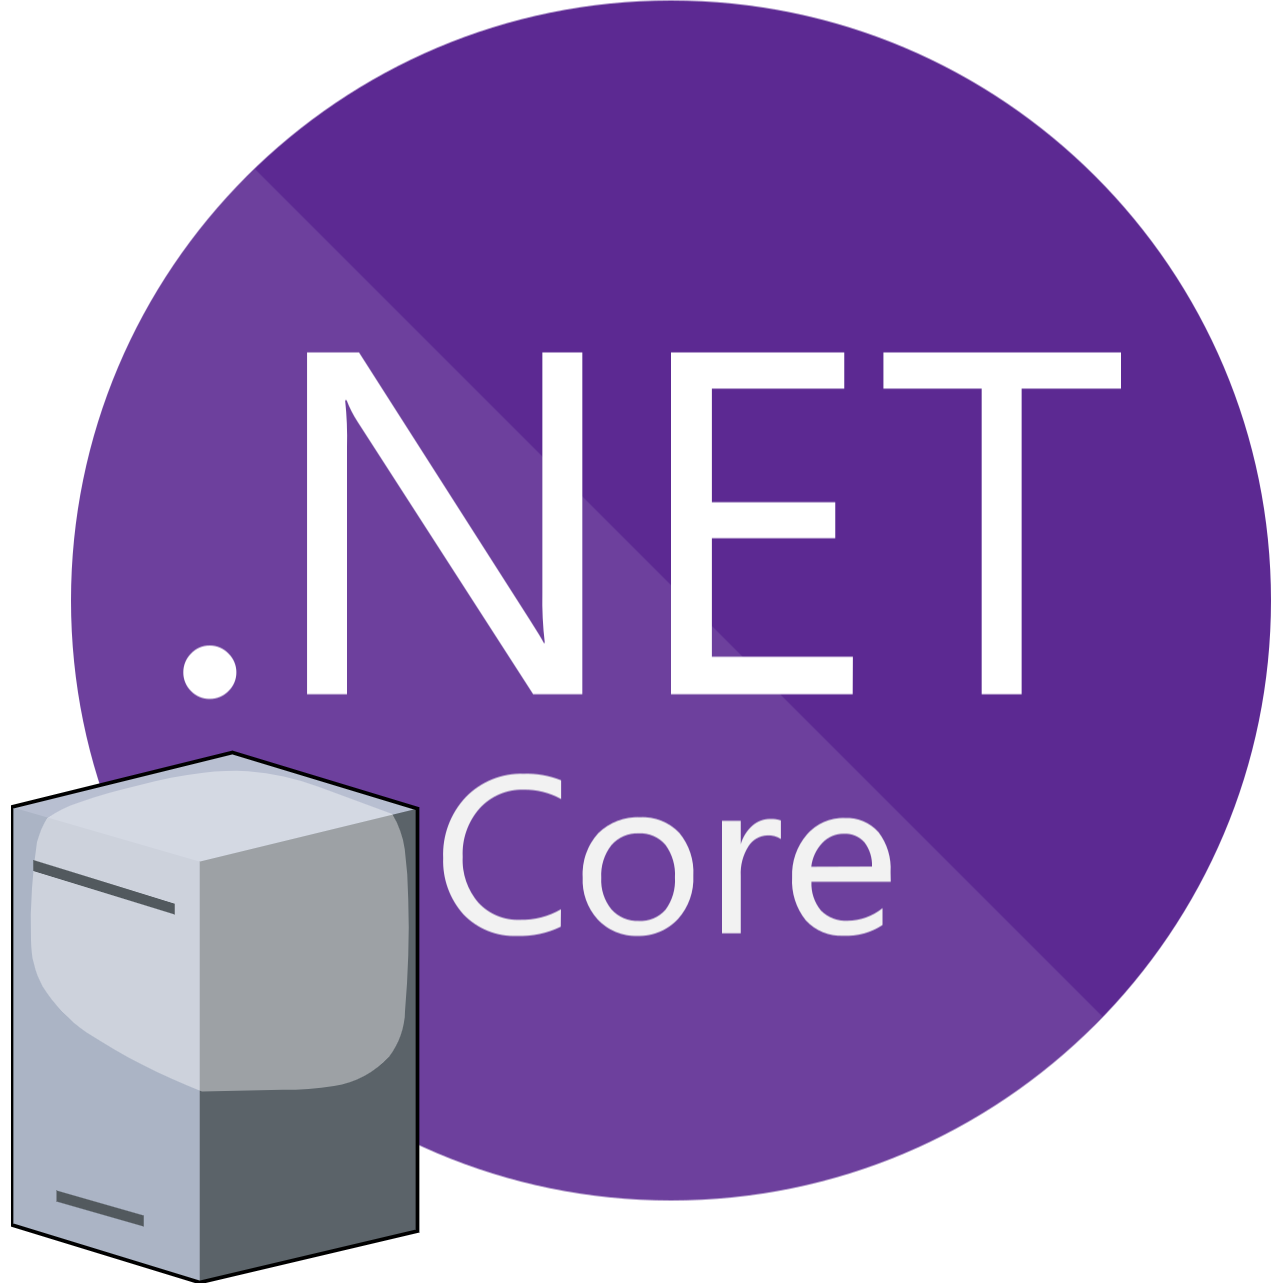 Net core hosting. Dot net Core. .Net Core 6.0. Net Core 3.1. Net 6.0 desktop runtime.